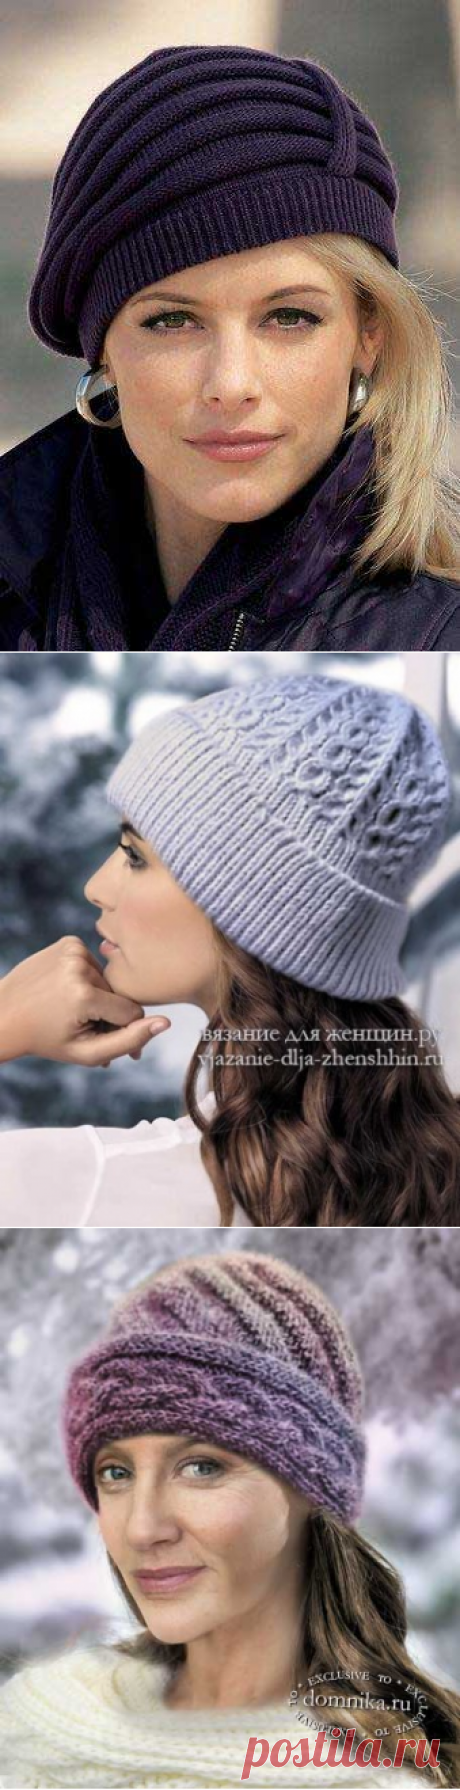 Зимние шапки спицами для пожилых женщин - вязаные шапки зимние модели